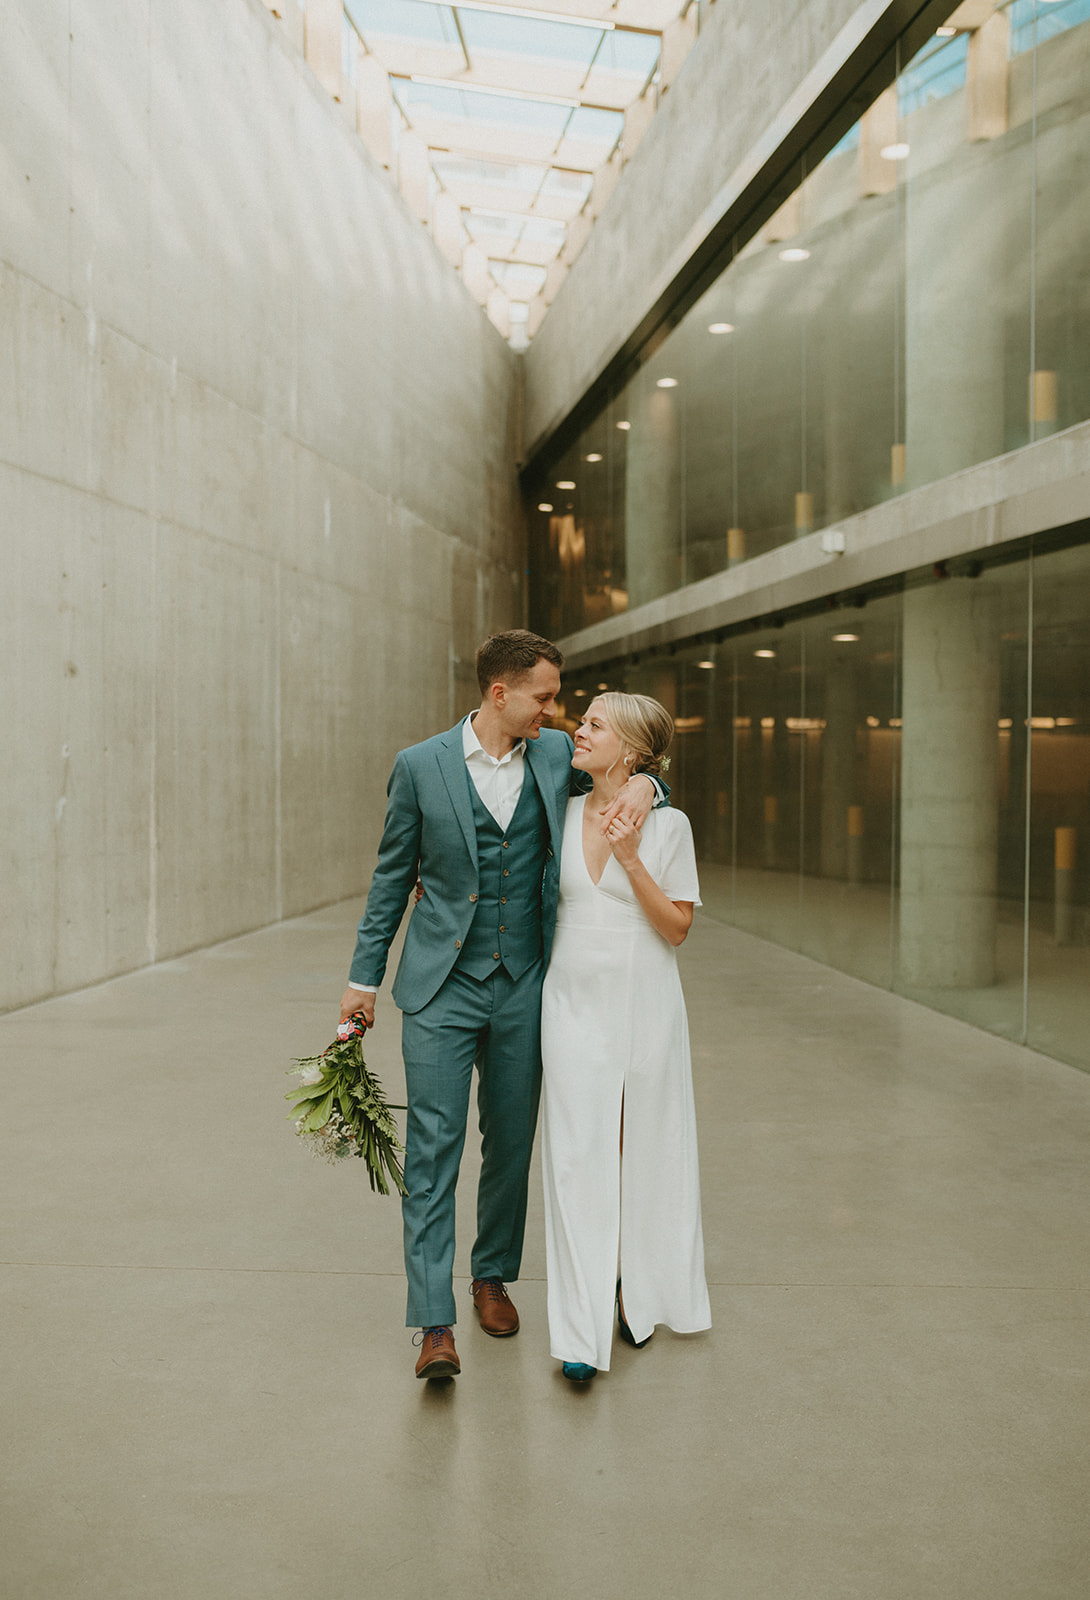 Covid 19 wedding in Calgary Alberta - diy bouquet, bride and groom